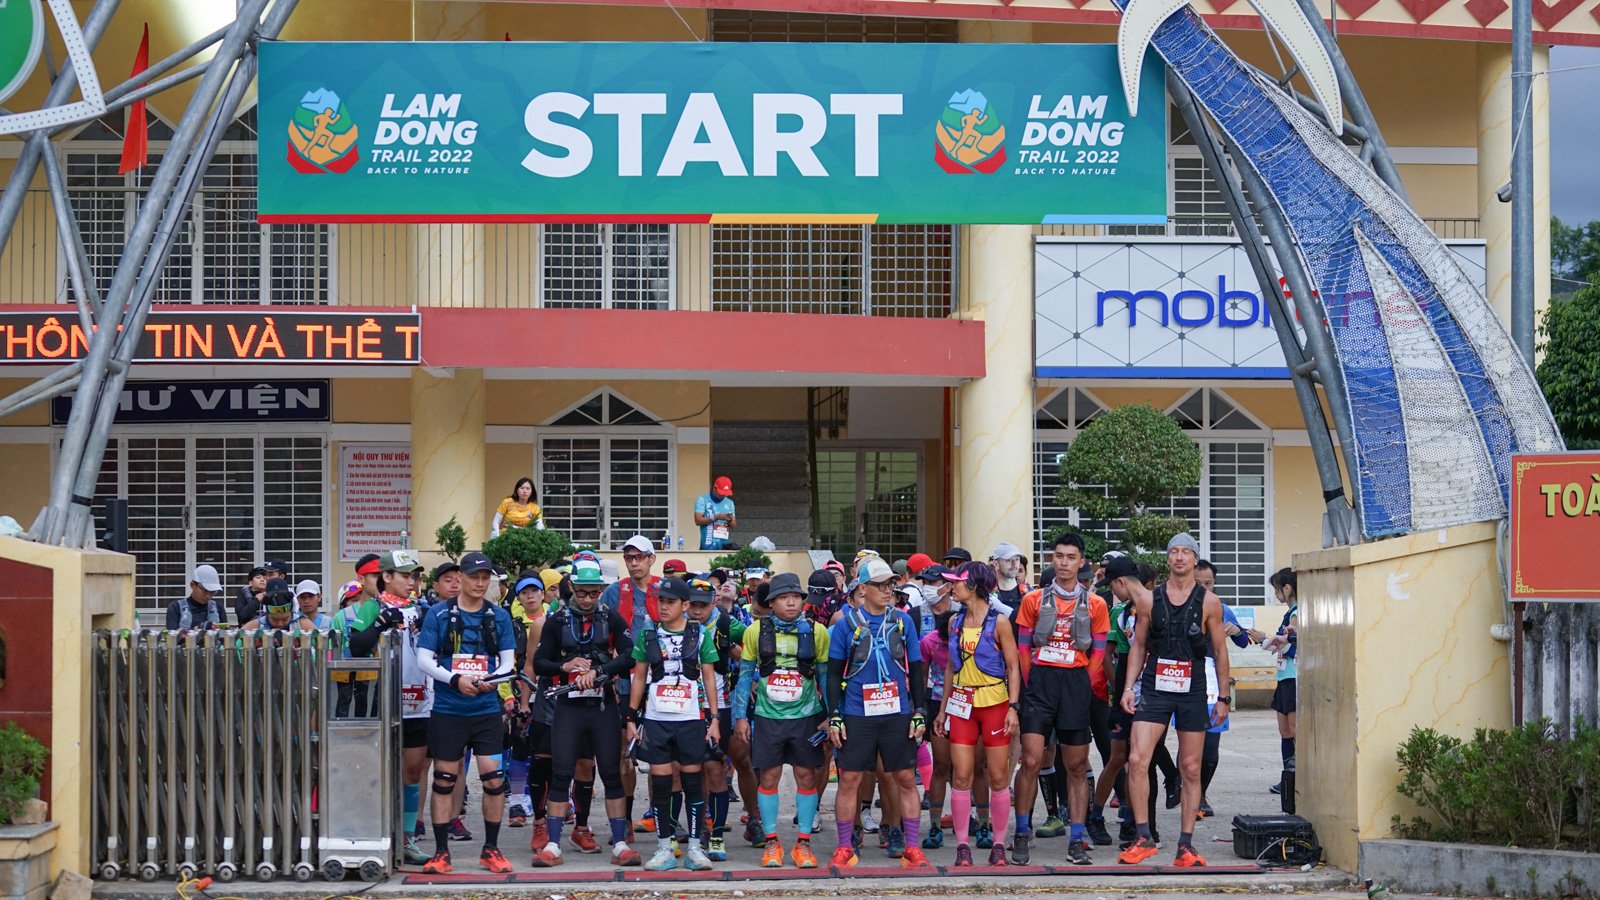 Gần 2.000 VĐV chinh phục Giải Chạy địa hình Lâm Đồng Trail 2022 - Ảnh 1.